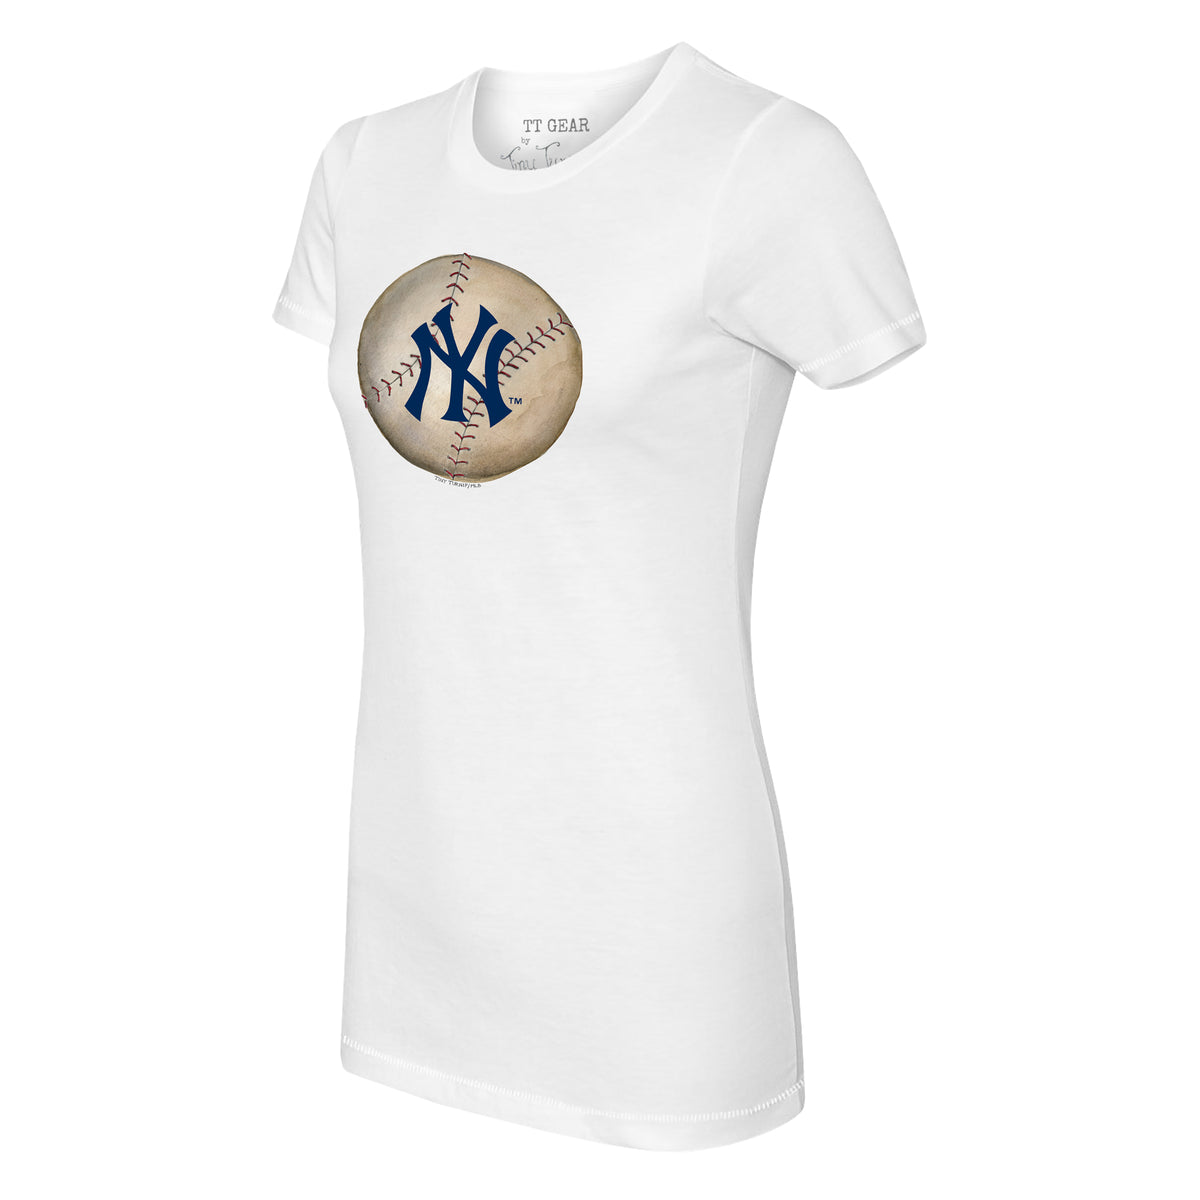 New York City Yankees T-shirtyankees Tee NY Baseball Tee 